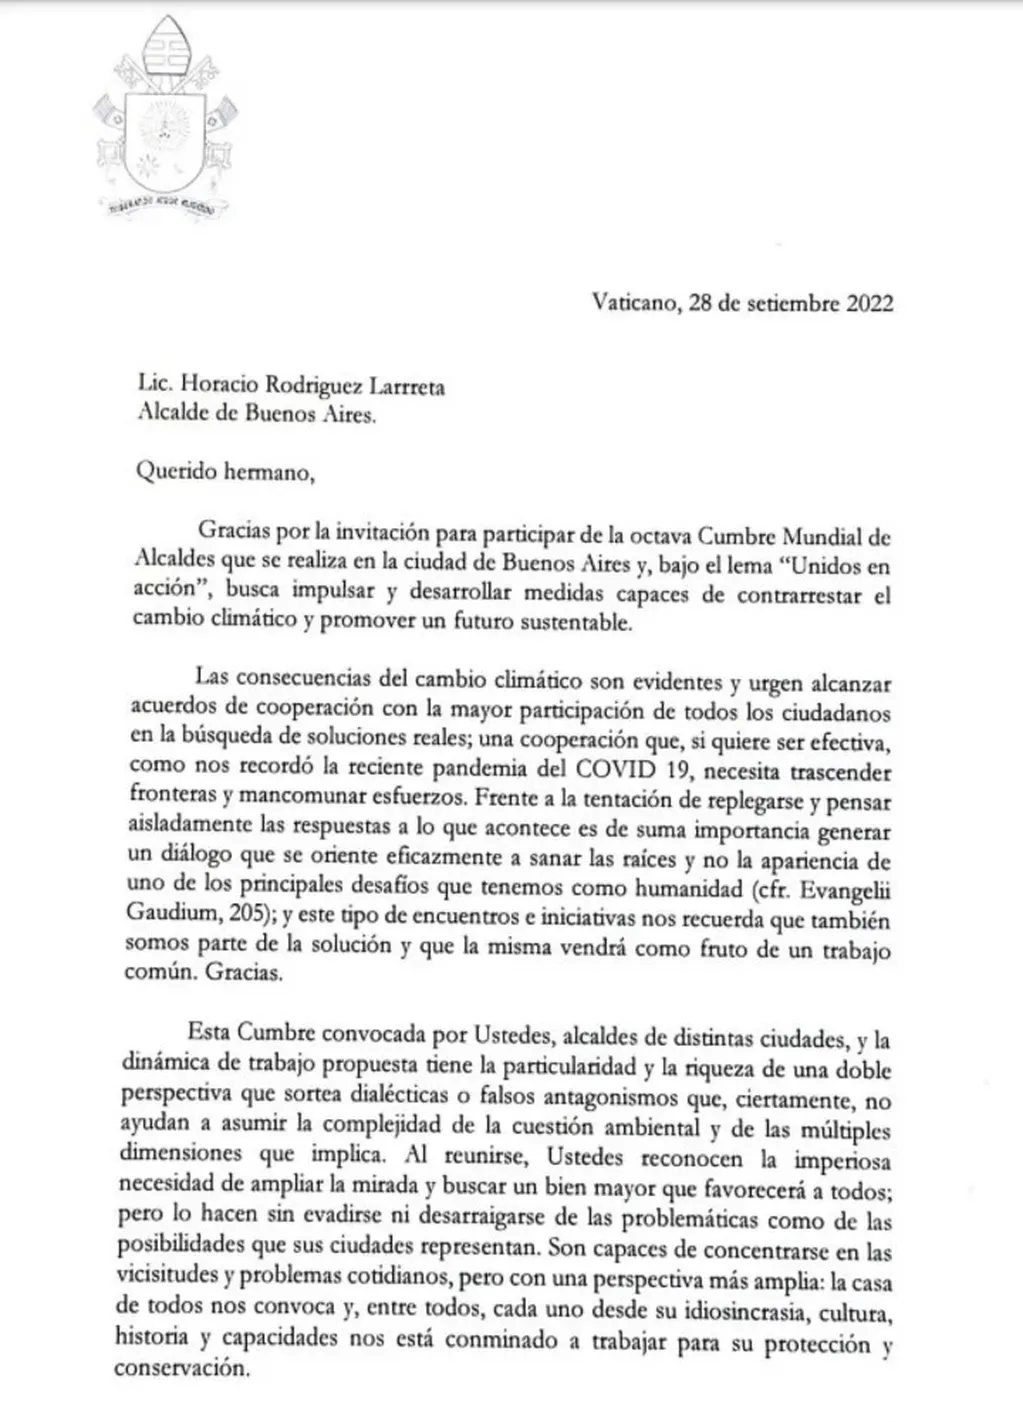 Carta del Pontífice a Rodríguez Larreta, en la cual pidió por el cambio climático y un trabajo colaborativo.